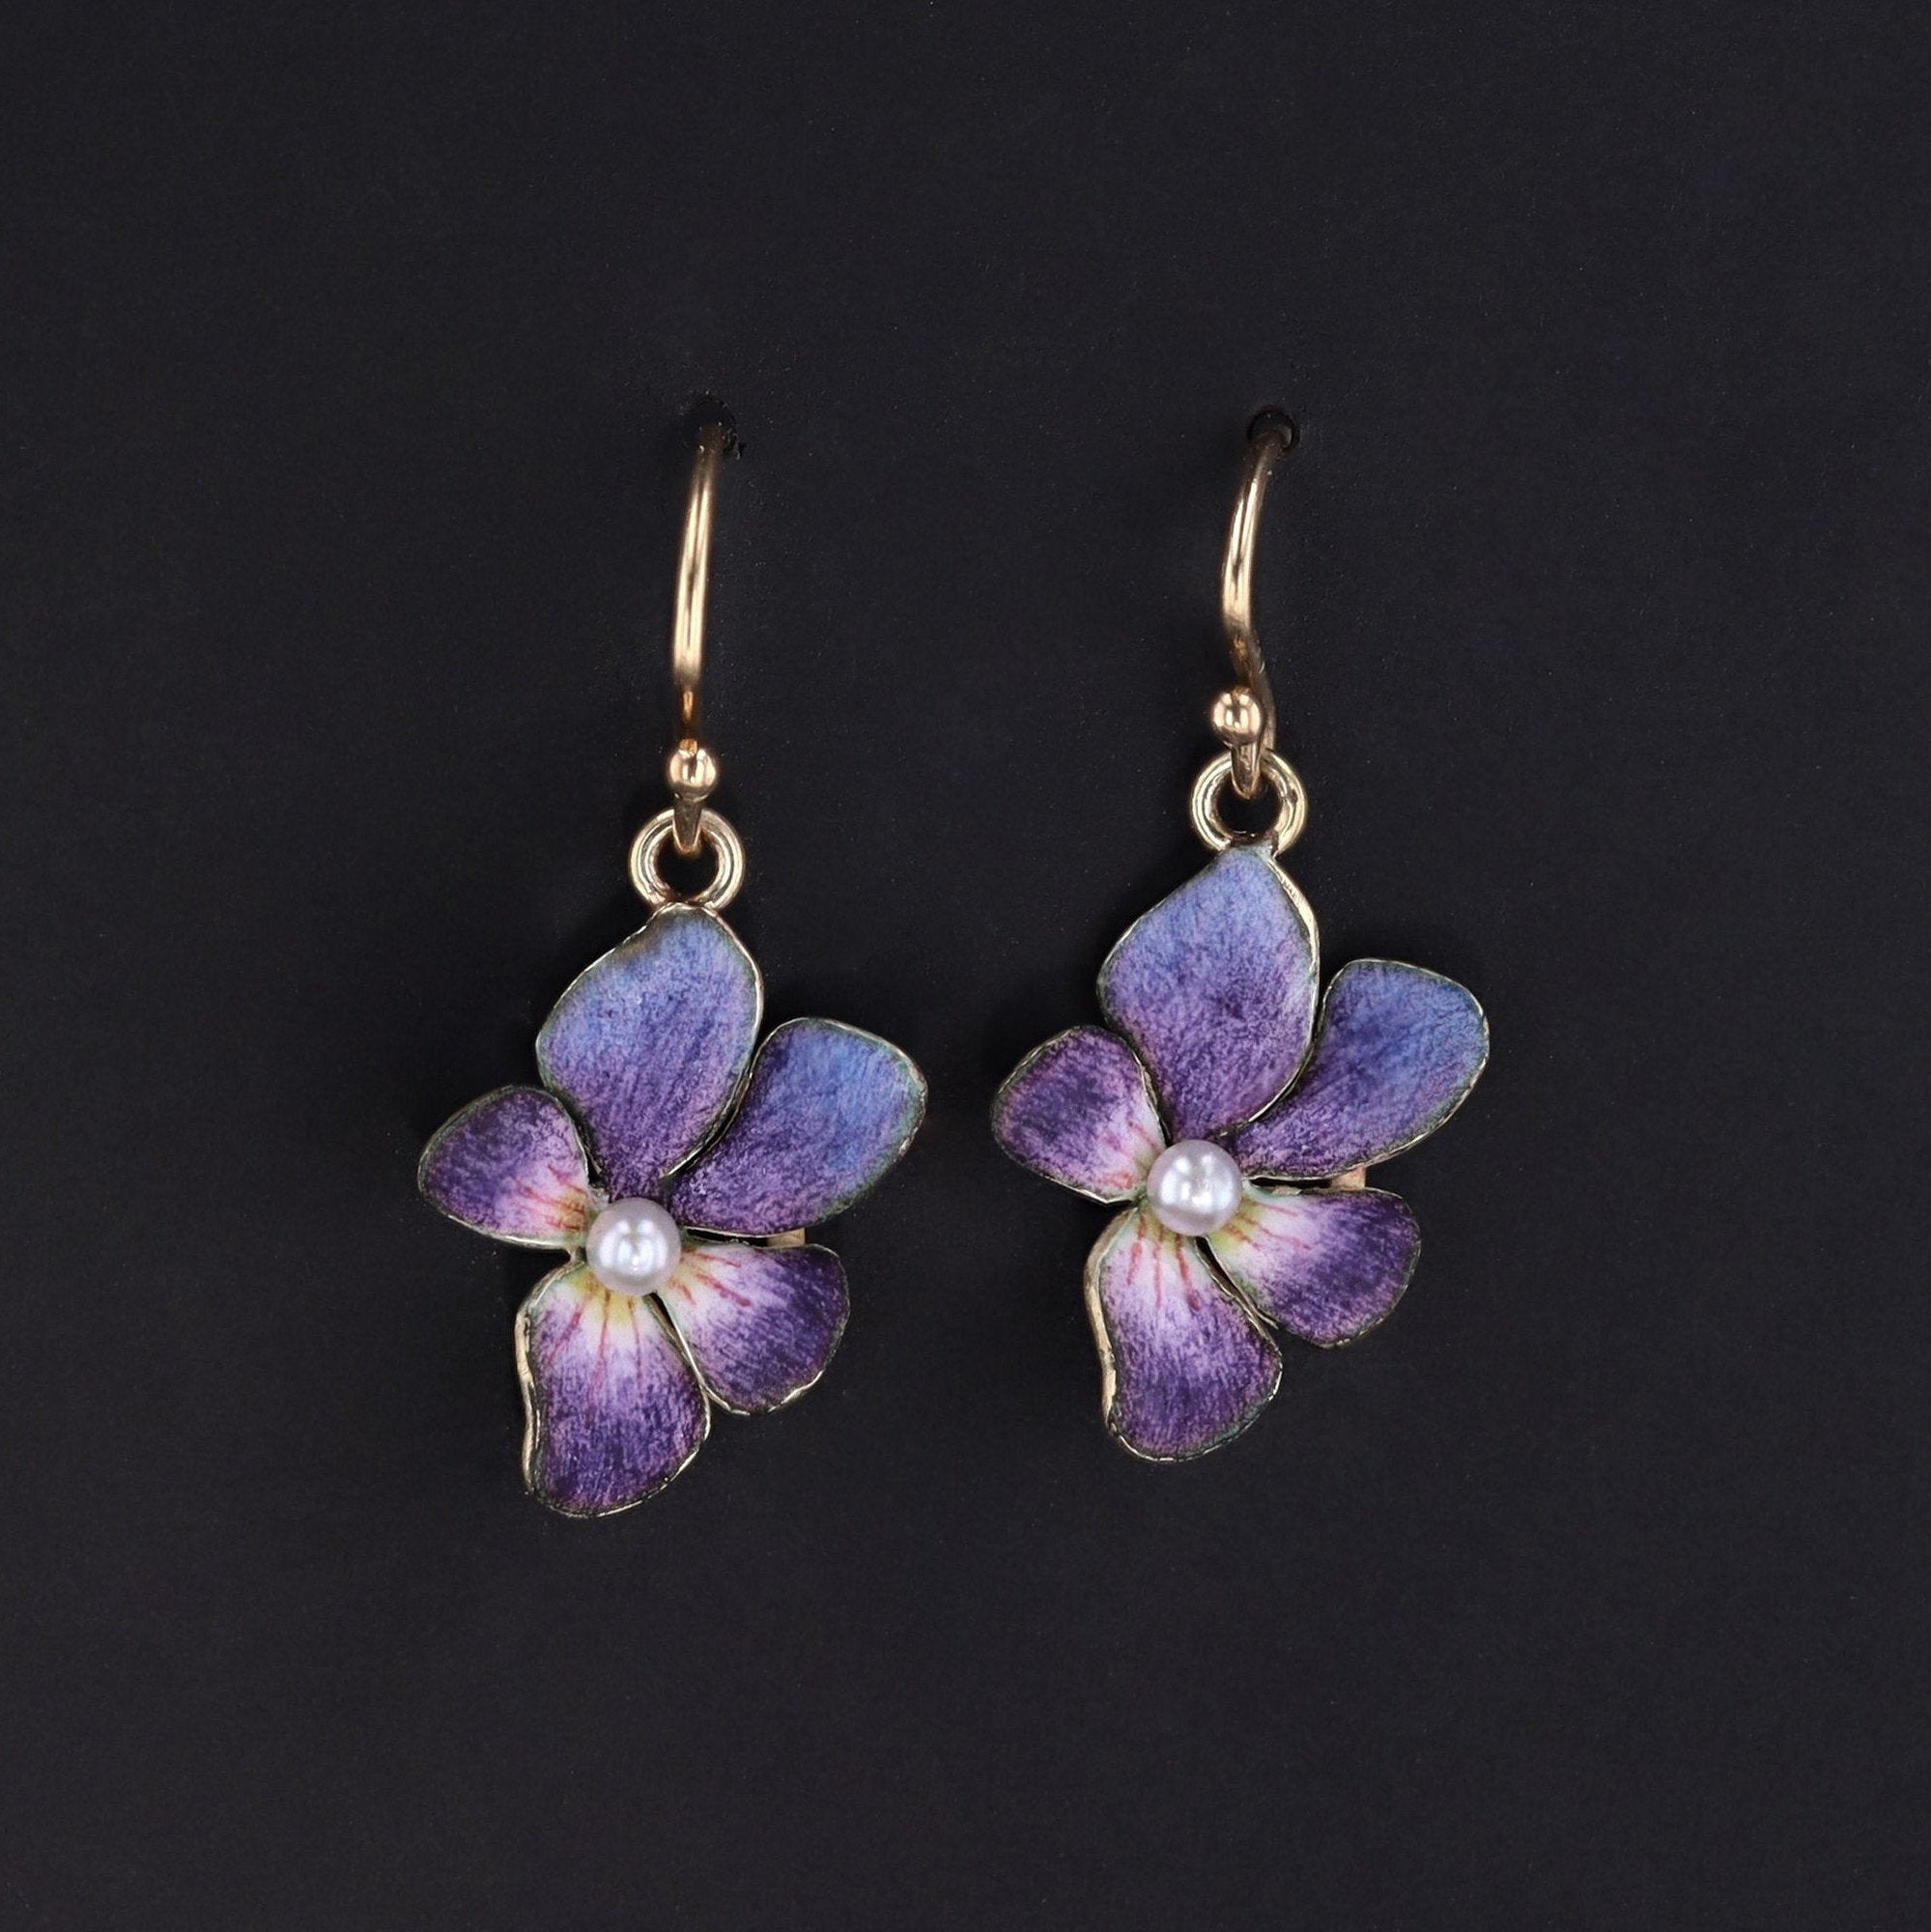 Violet Earrings | 14k Enamel Flower Earrings | Antique Violet Earrings with Pearls | Antique Pin Conversion Earrings